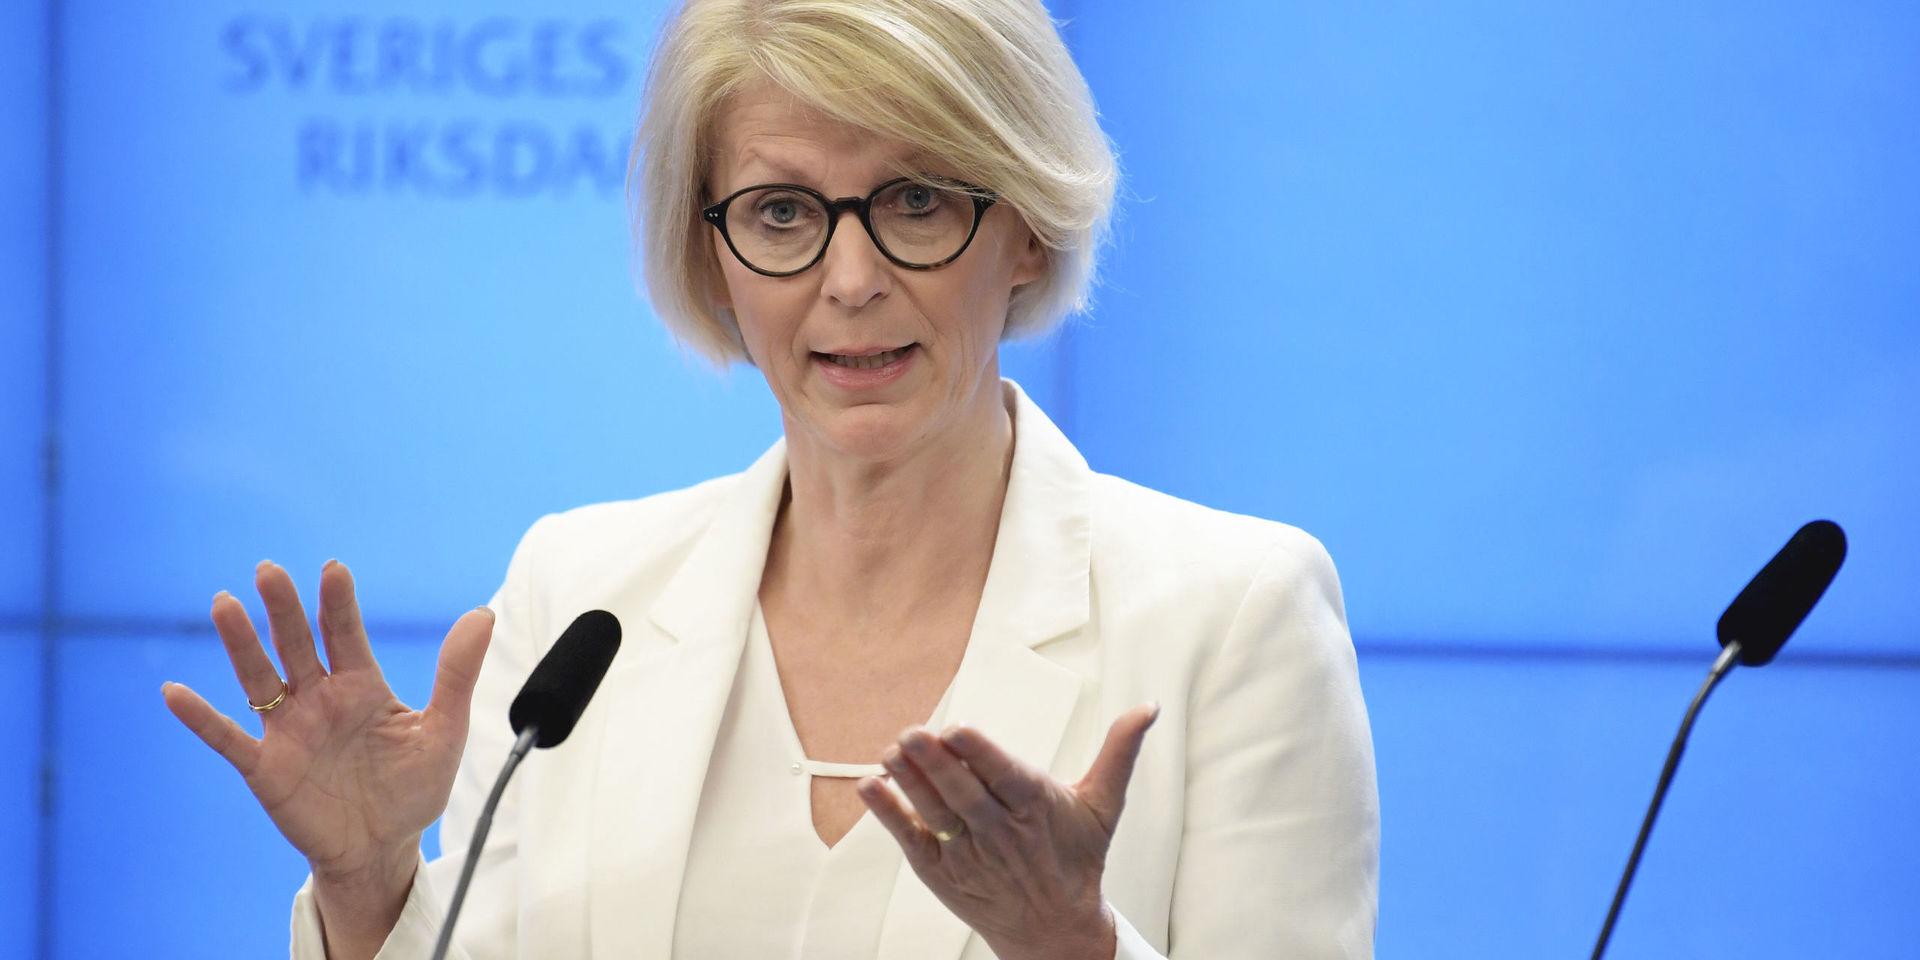 
Elisabeth Svantesson, ekonomisk-politisk talesperson för Moderaterna, presenterade på tisdagen nya förslag för att bekämpa coronakrisen.